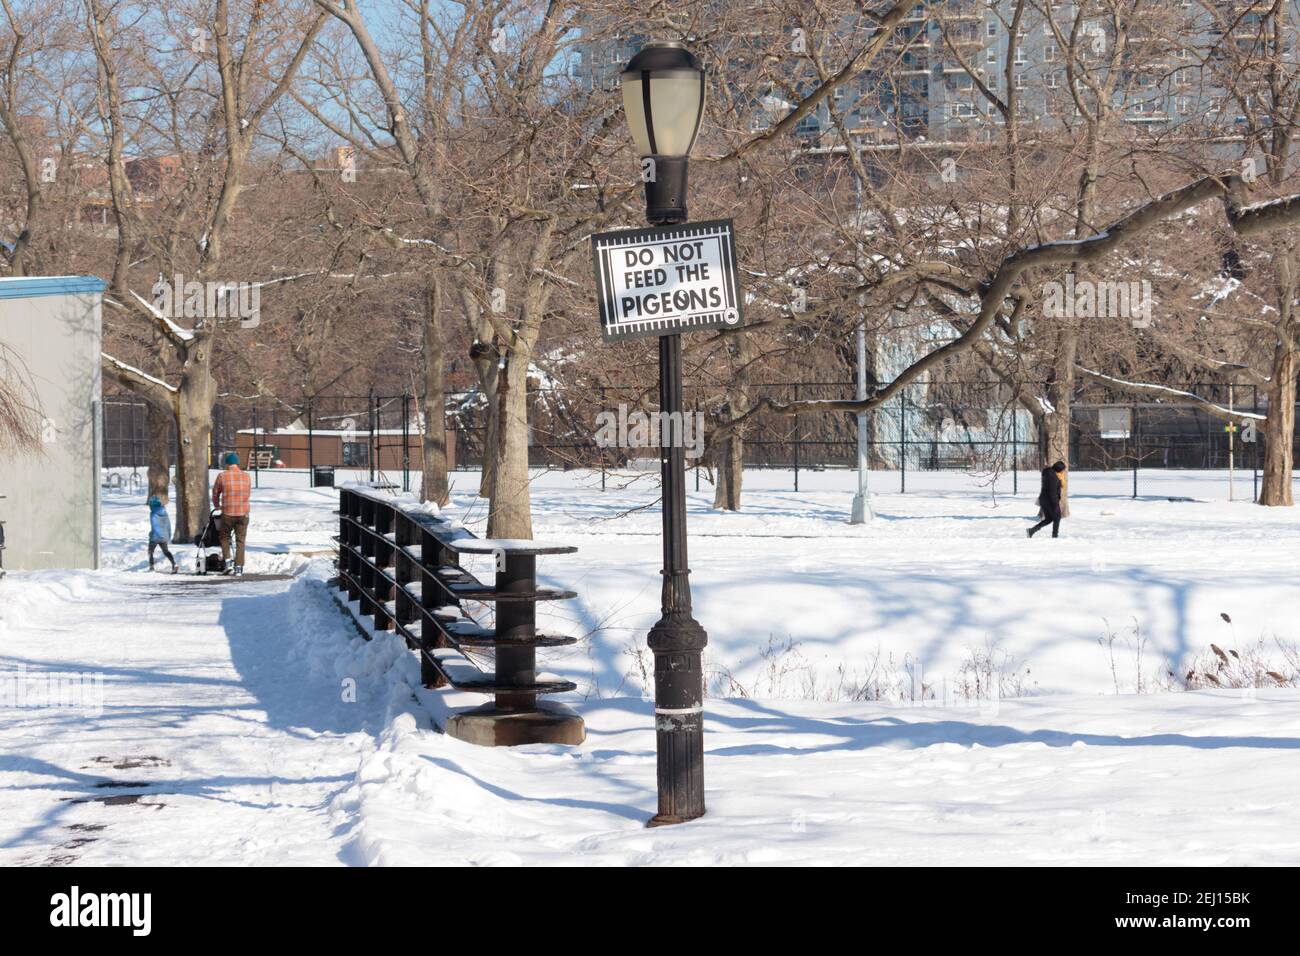 Panneau sur un lampadaire de lecture ne pas nourrir les pigeons à Inwood Hill Park, New York en hiver avec de la neige Banque D'Images